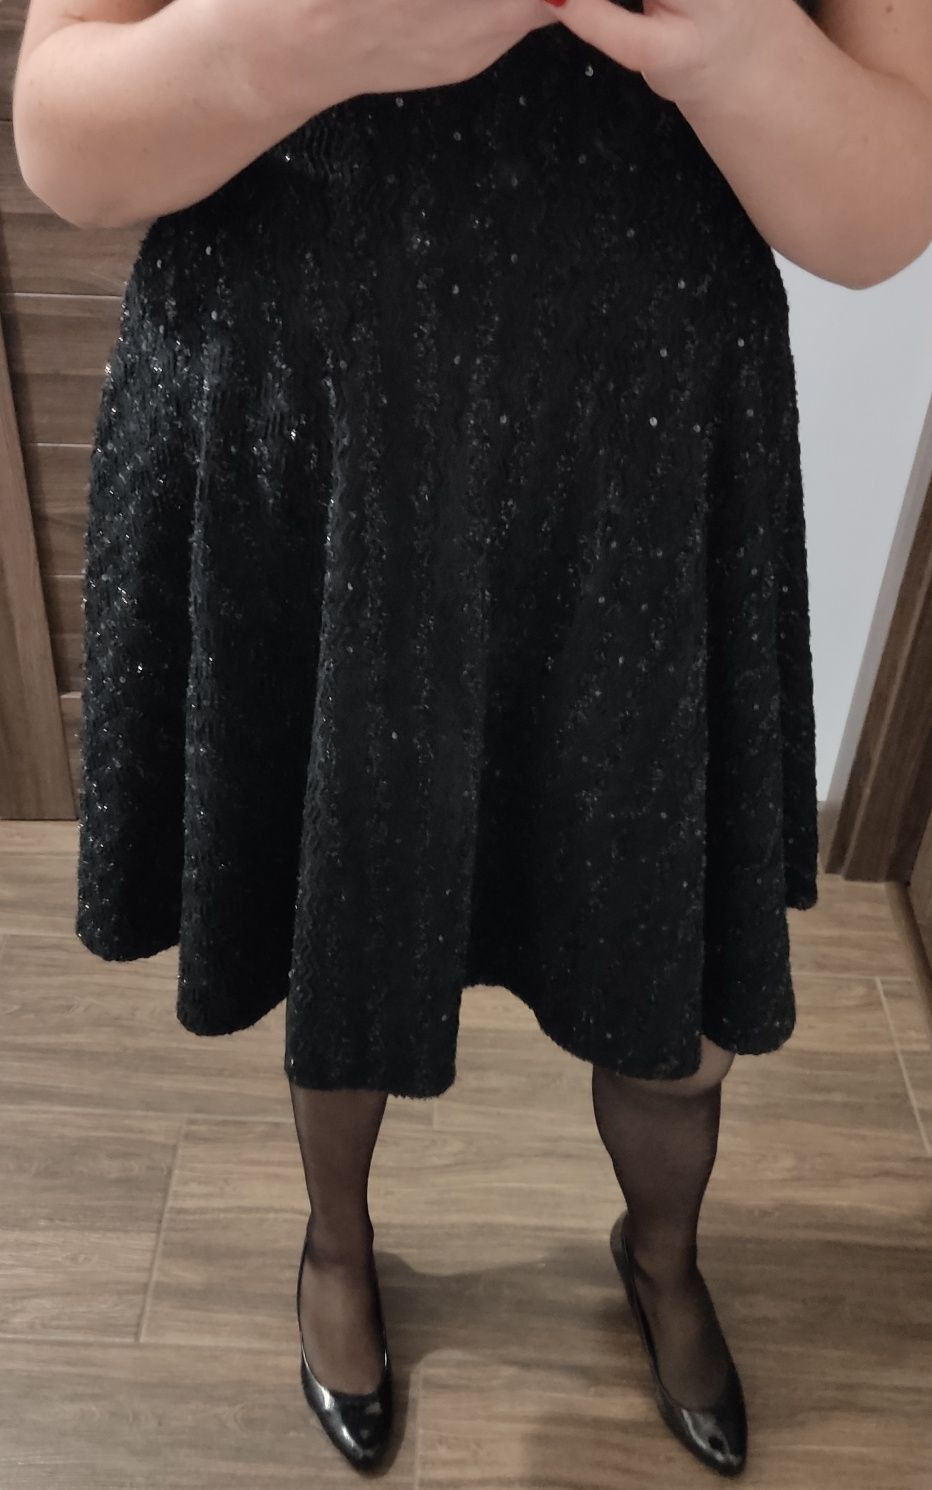 Sukienka z cekinami czarna kieszenie 42 Xl andrzejki sylwester